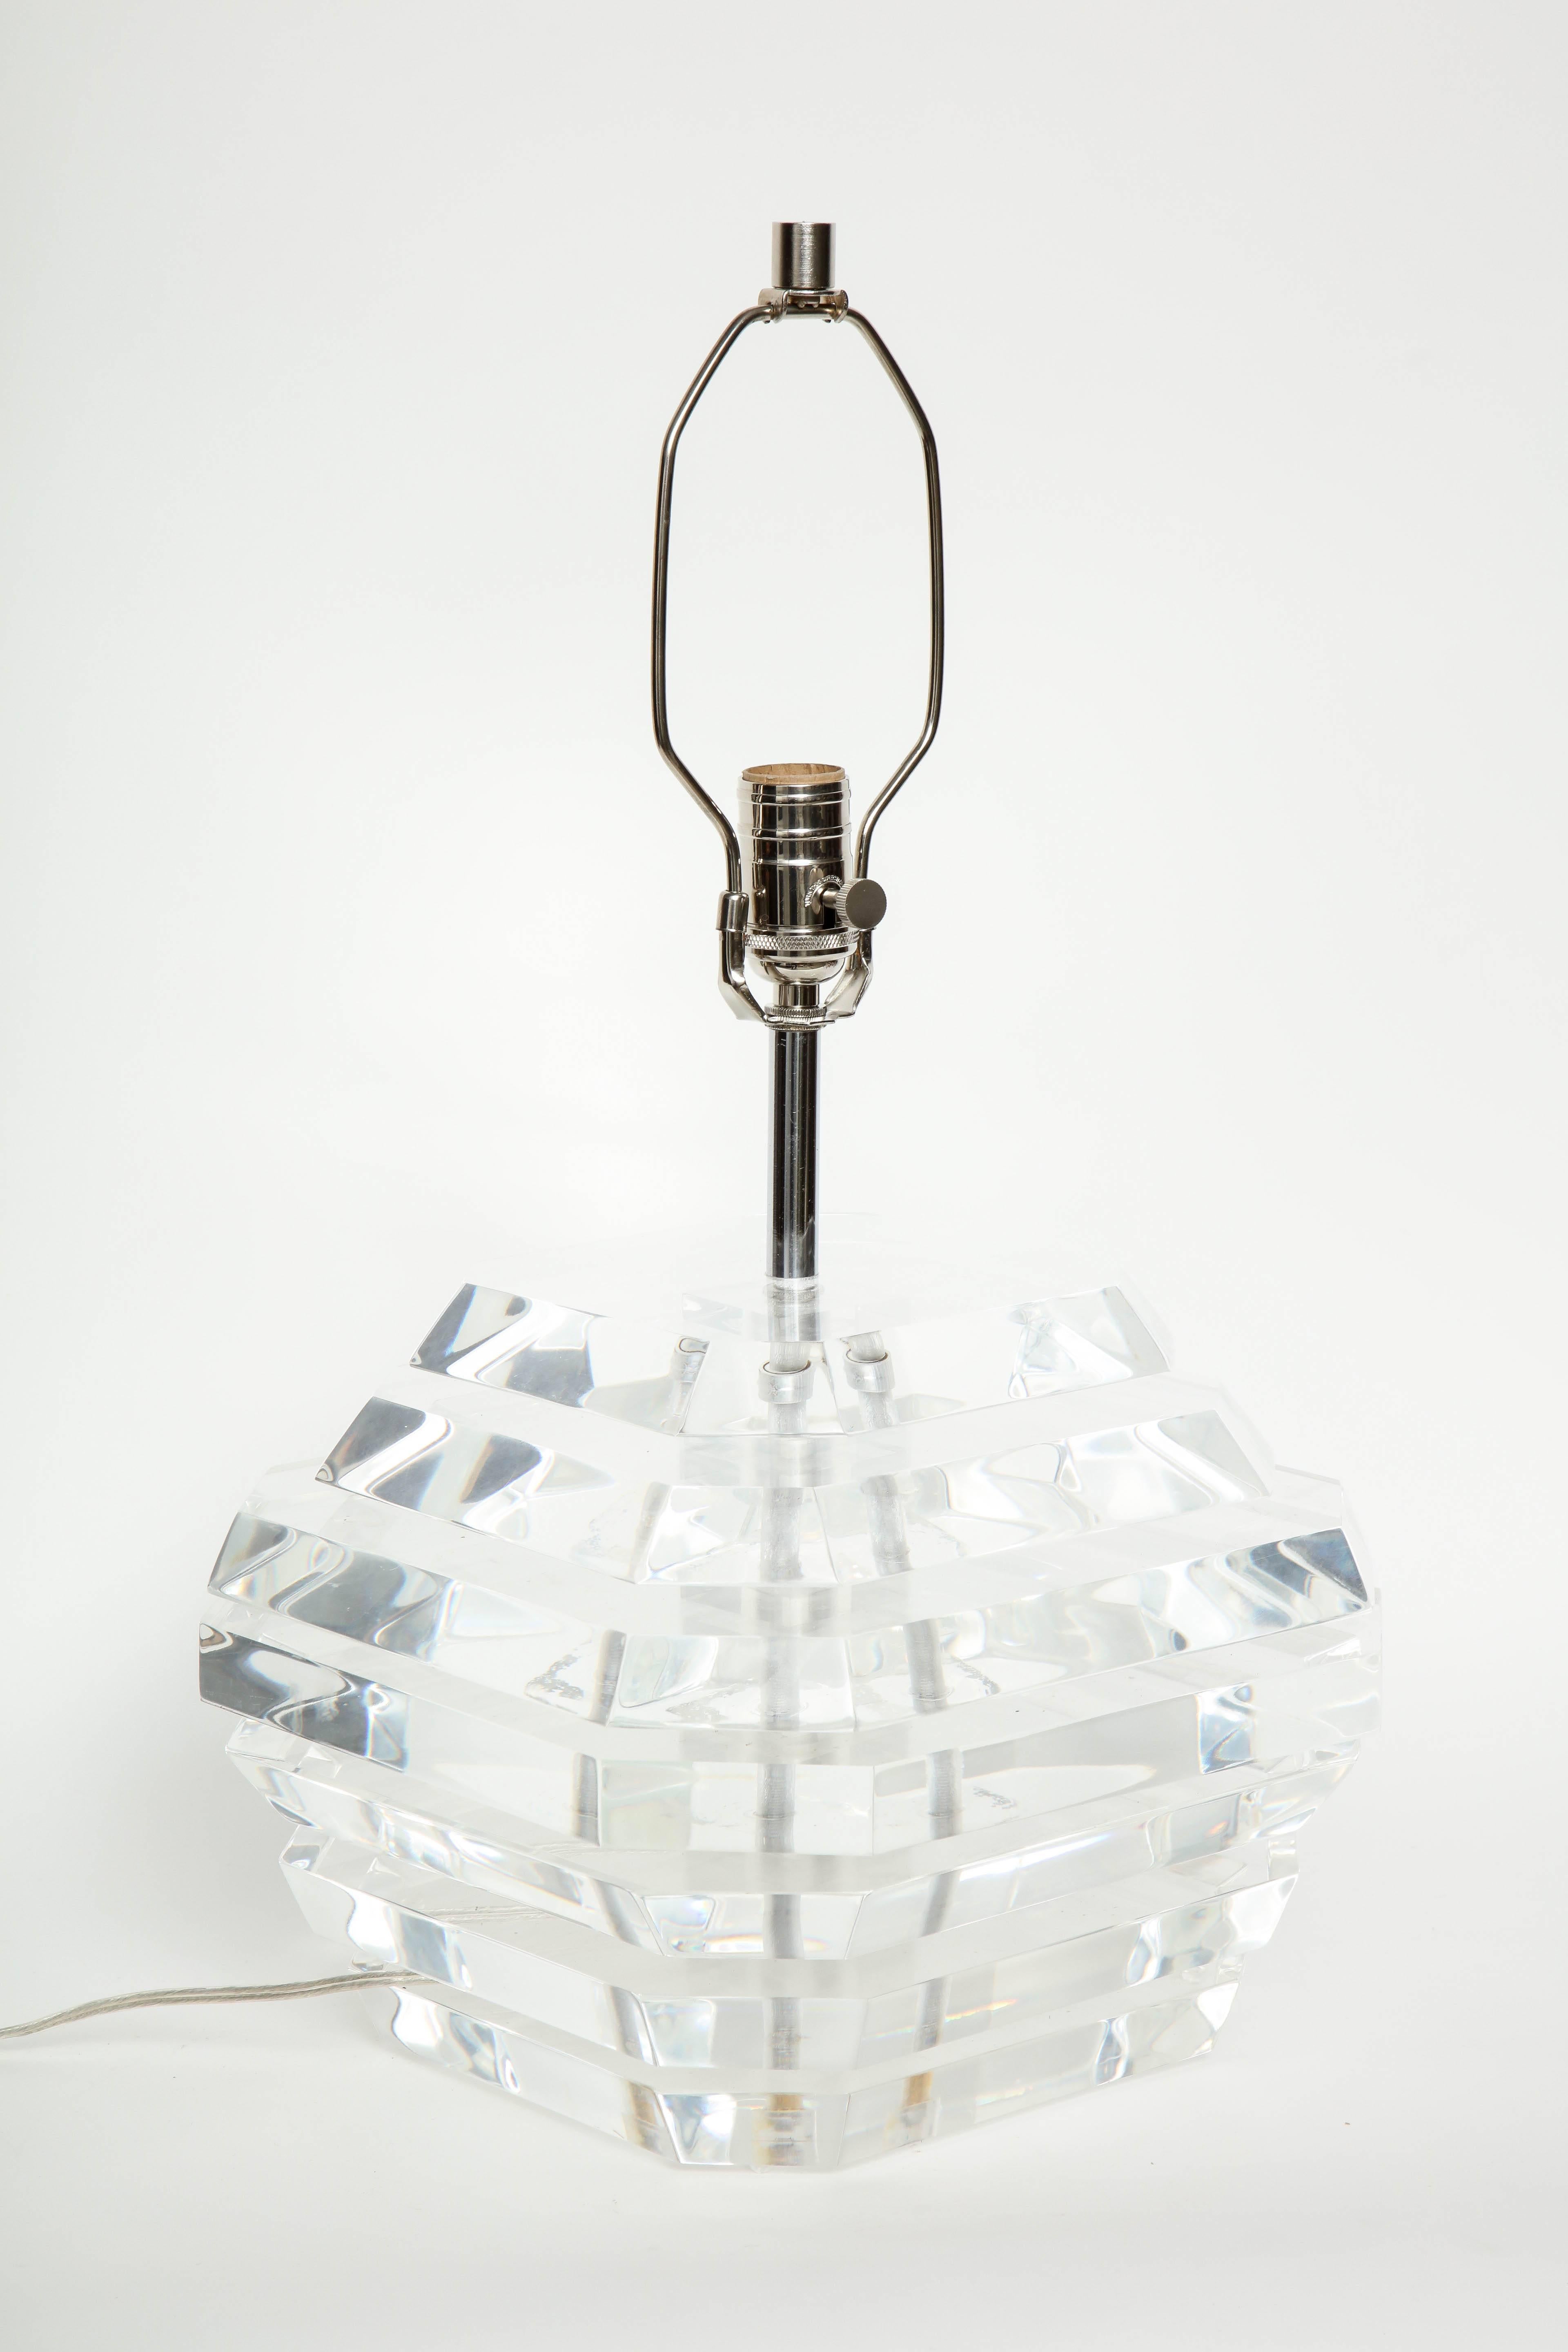 Paire de lampes empilées en Lucite conçues par George Bullio, avec des bases trapézoïdales stylisées aux bords biseautés. Recâblé pour une utilisation aux USA, ampoules 100W max.